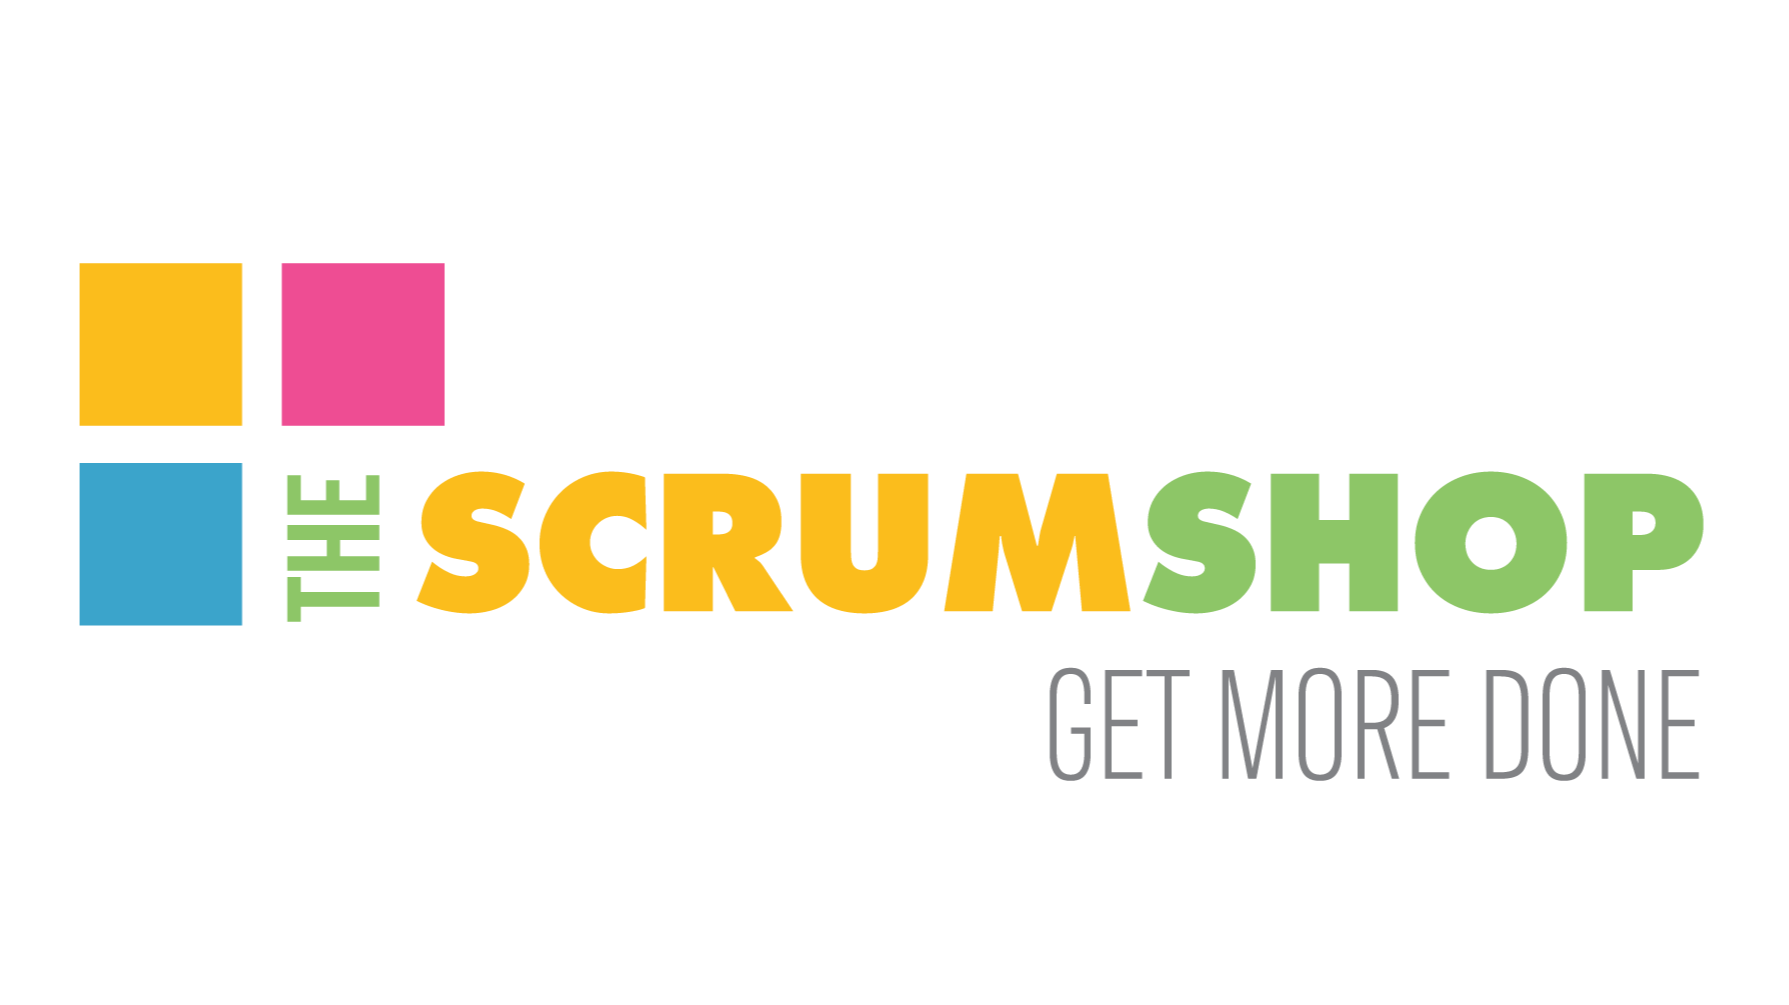 The Scrum Shop